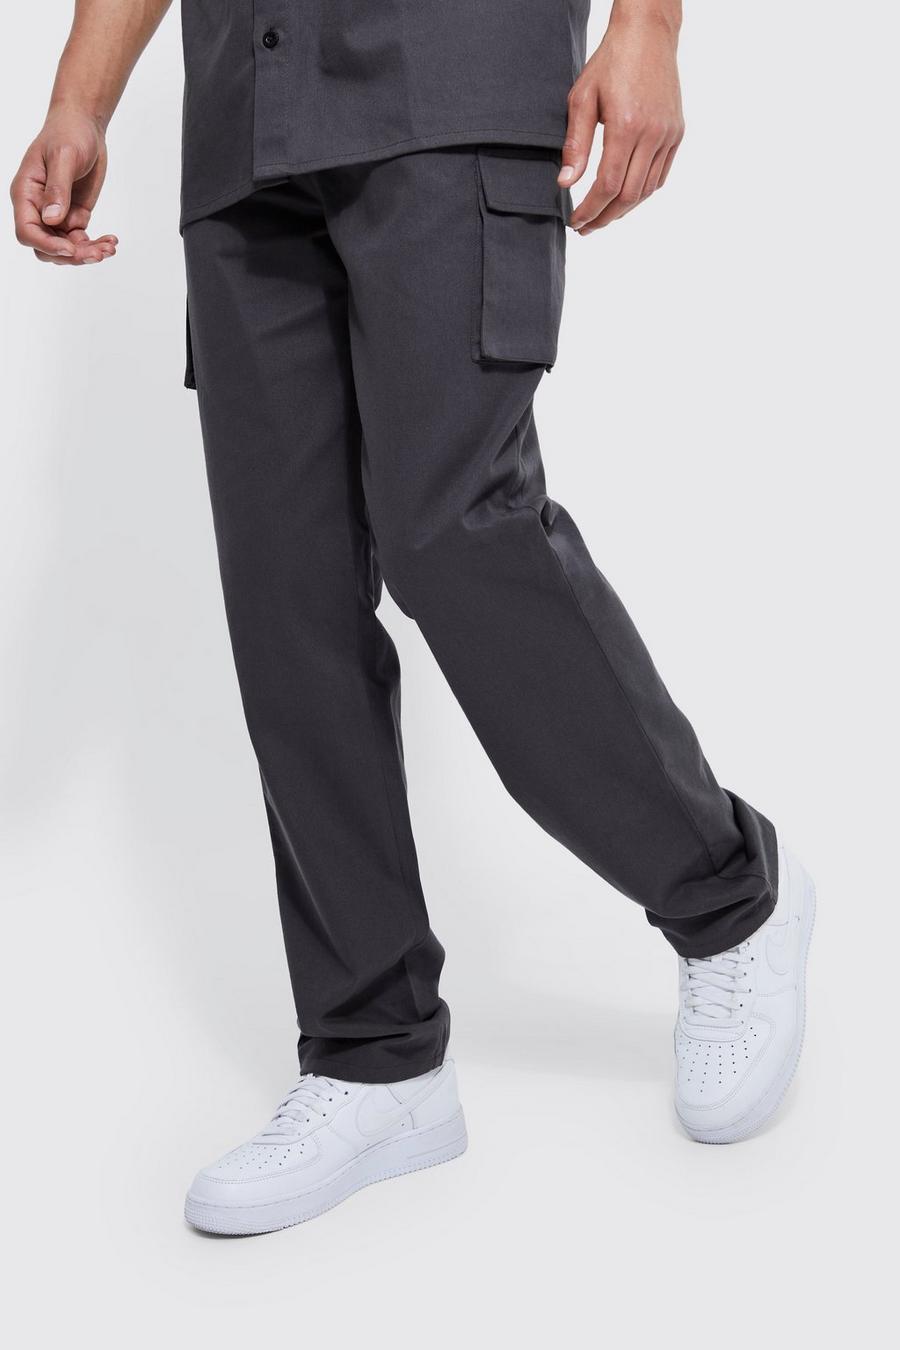 Pantalón Tall recto utilitario cargo con cintura elástica, Charcoal gris image number 1